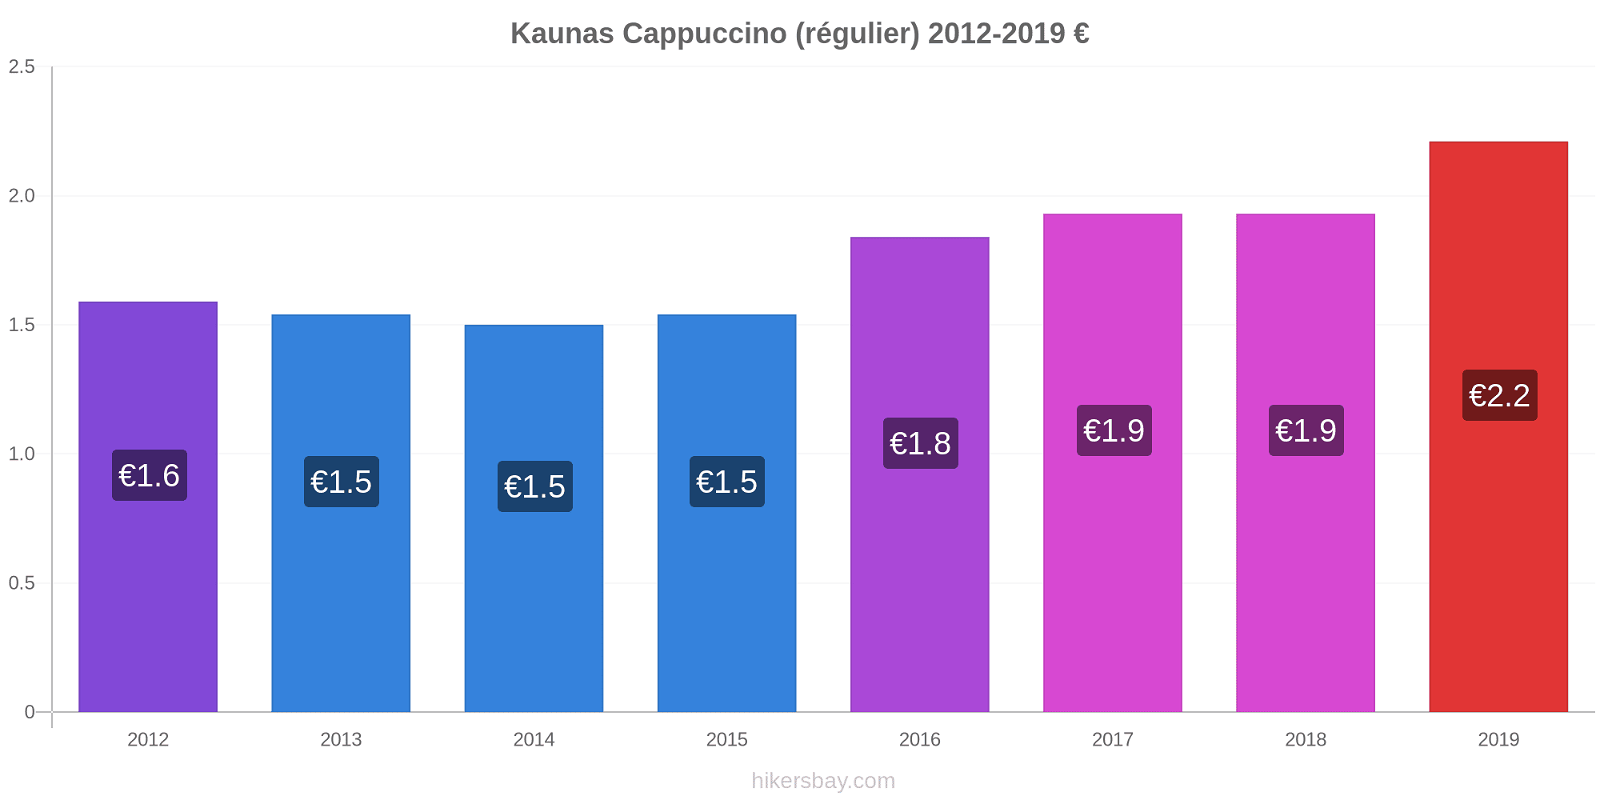 Kaunas changements de prix Cappuccino (régulier) hikersbay.com